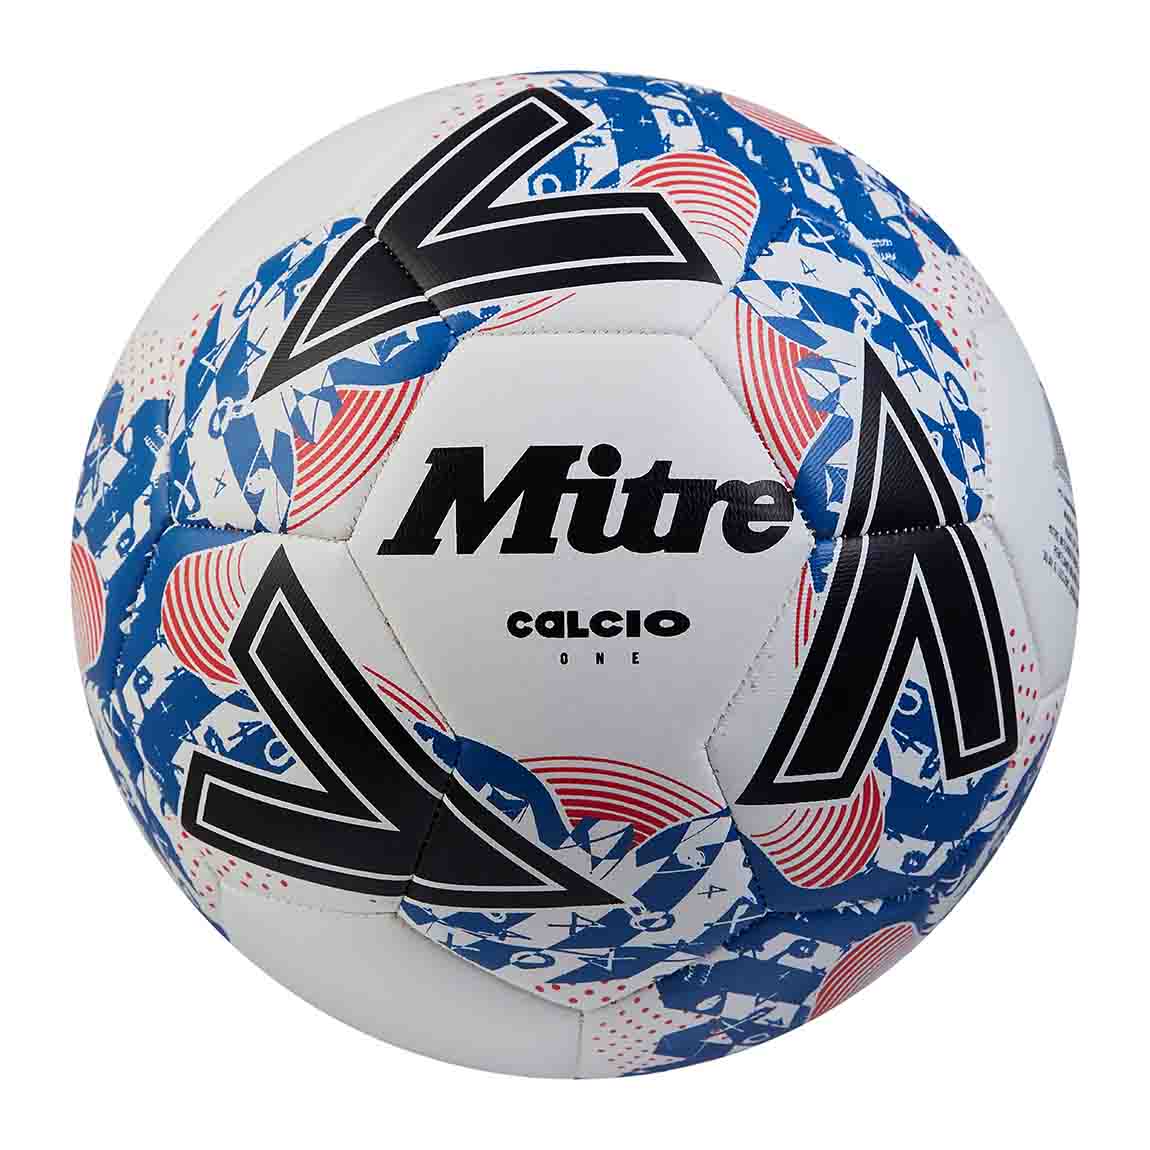 Photos - Football Mitre Calcio One 24    Balls Sports Ball Shop - Size 